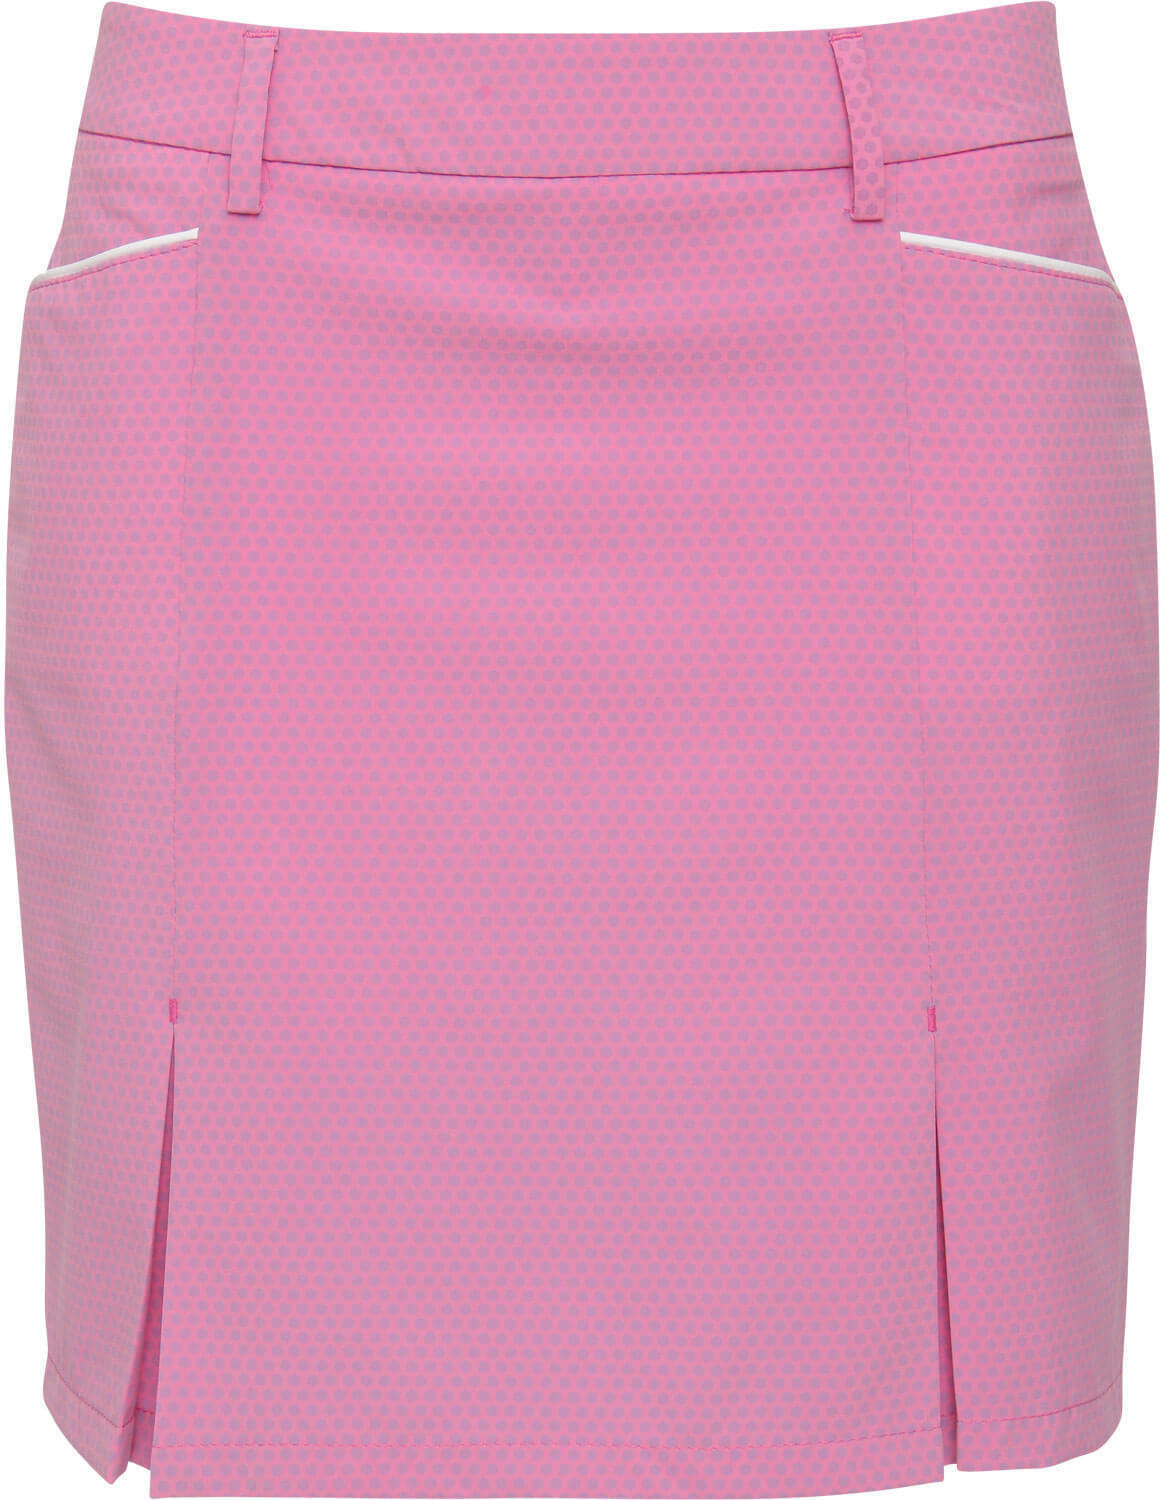 Φούστες και Φορέματα Brax Scalla Womens Skort Pink 38